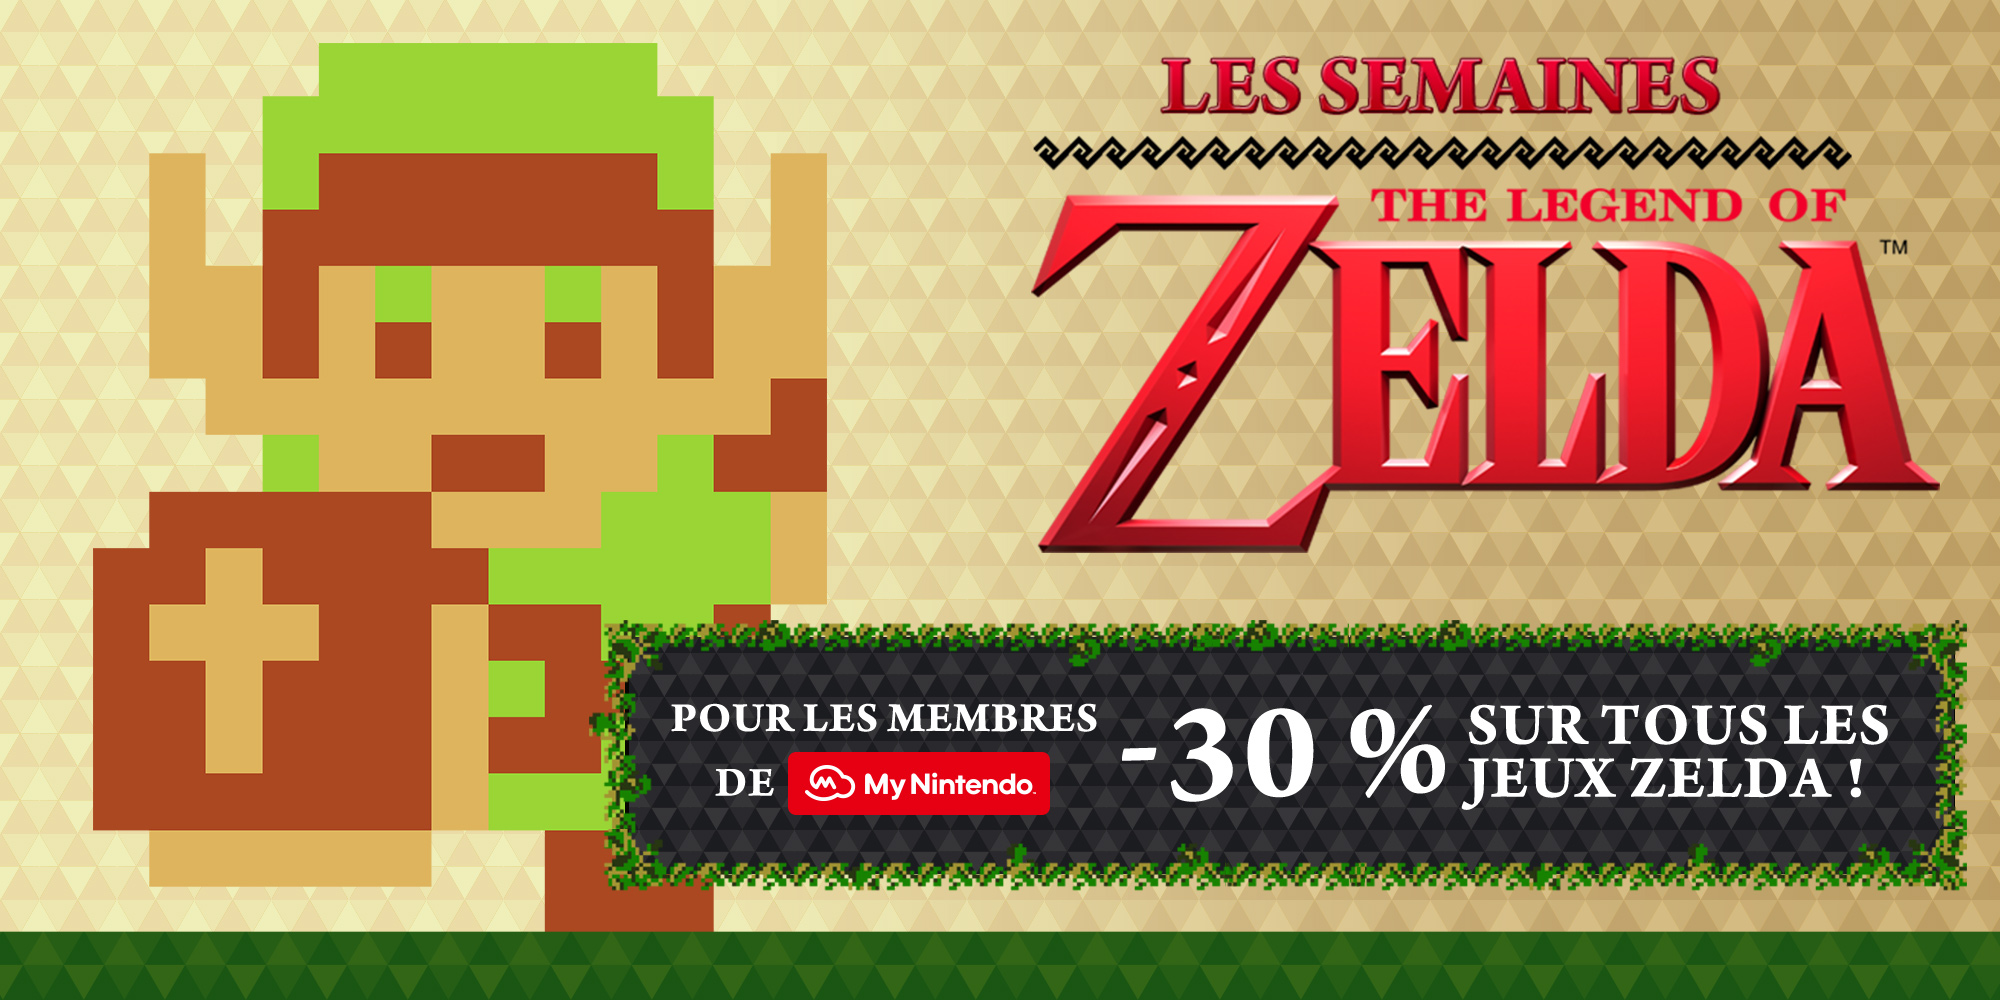 Les semaines The Legend of Zelda™ 2017 débutent sur le Nintendo eShop